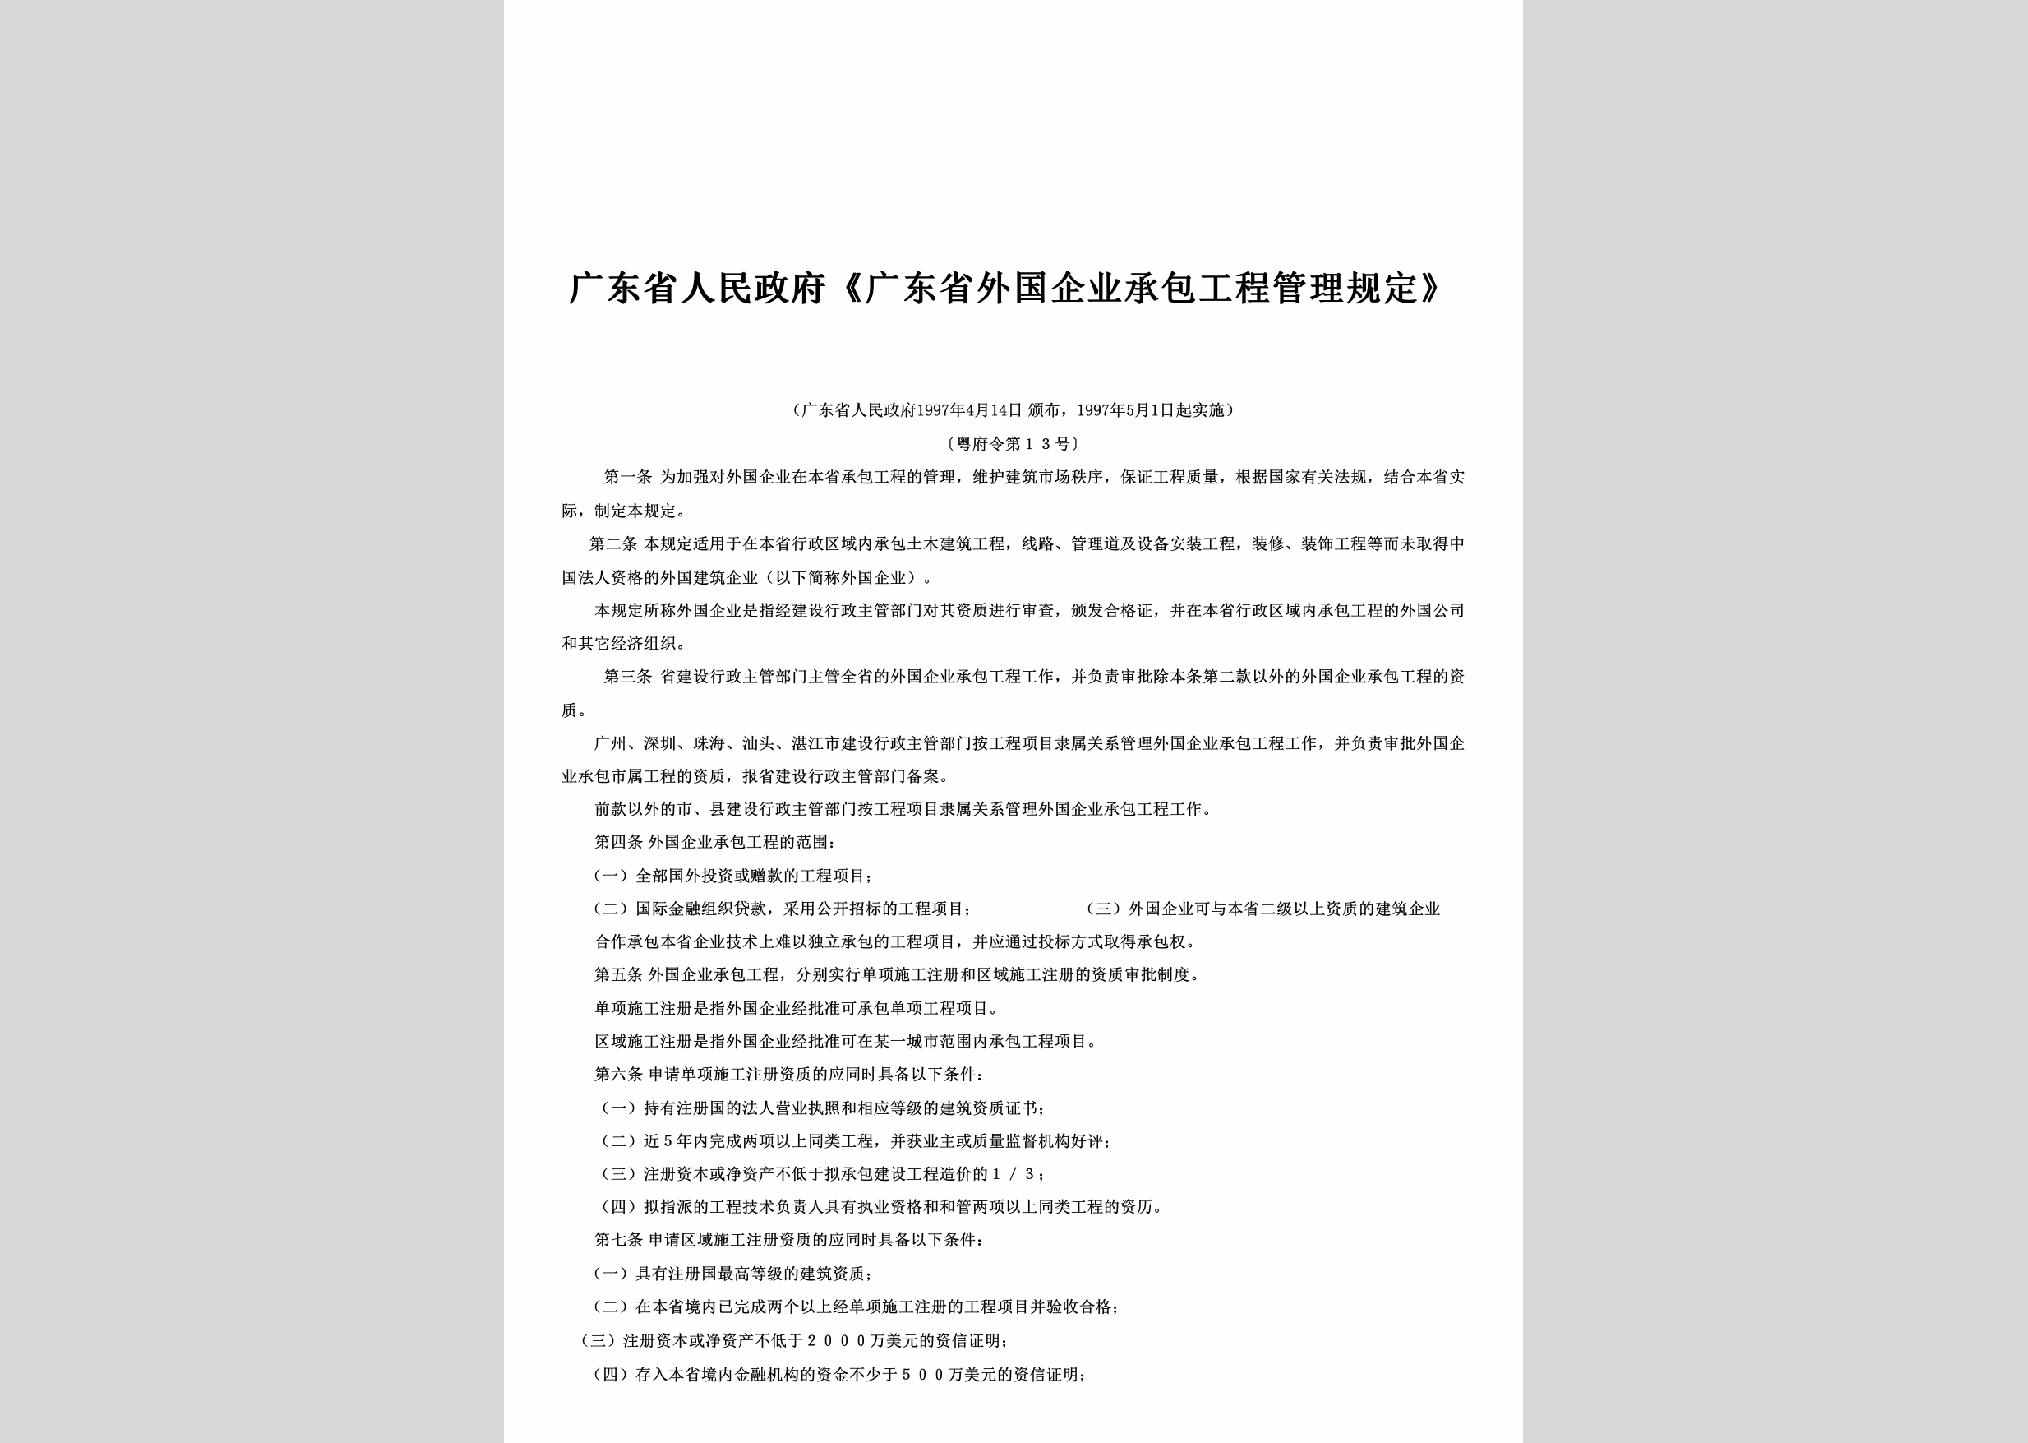 粤府令1997年第13号：《广东省外国企业承包工程管理规定》